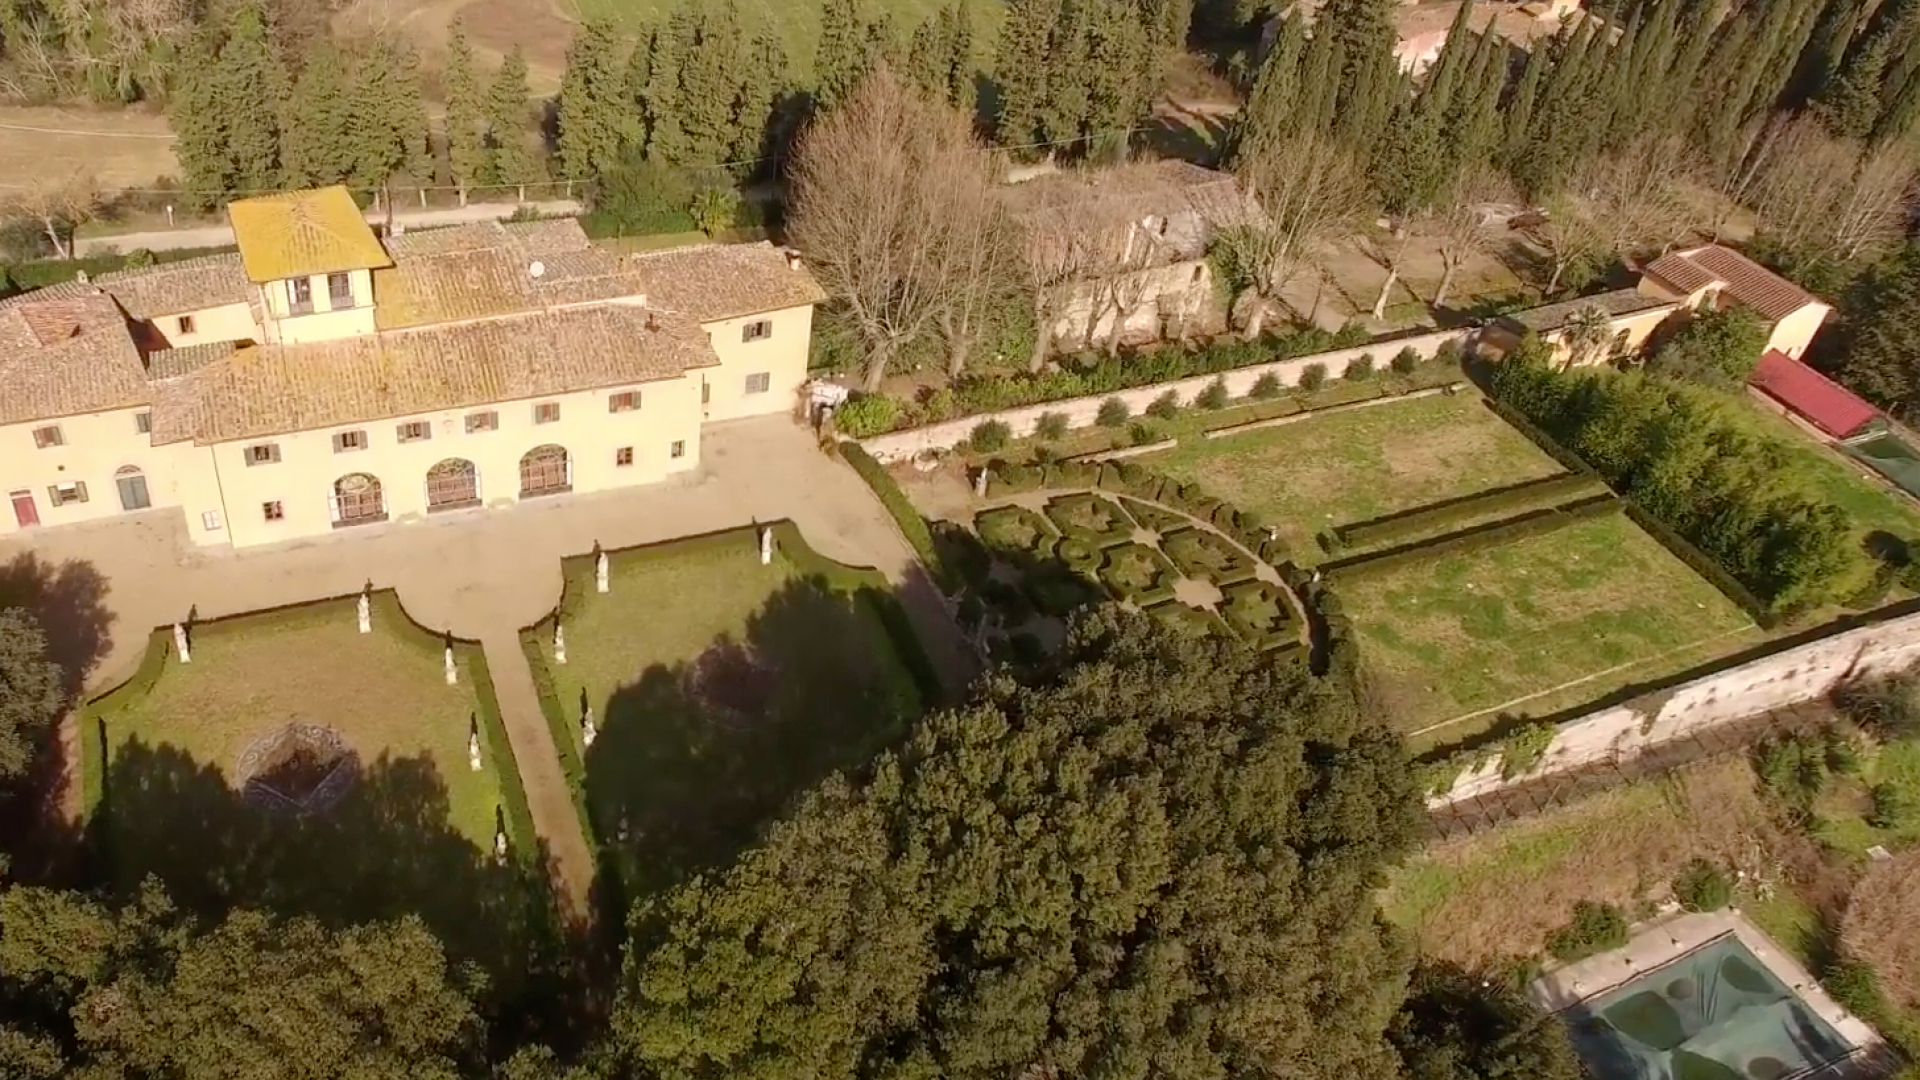 Villa di Meleto, Castelfiorentino